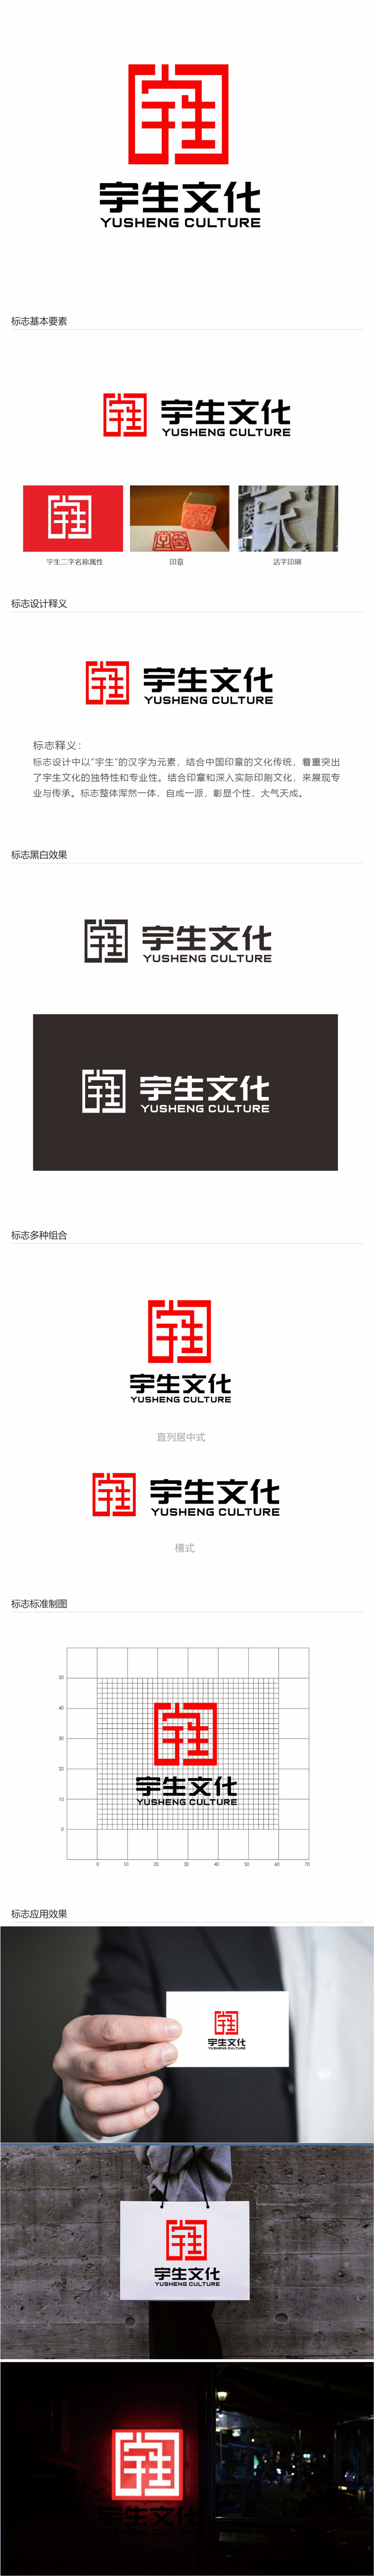 唐国强的山东宇生文化股份有限公司logo设计